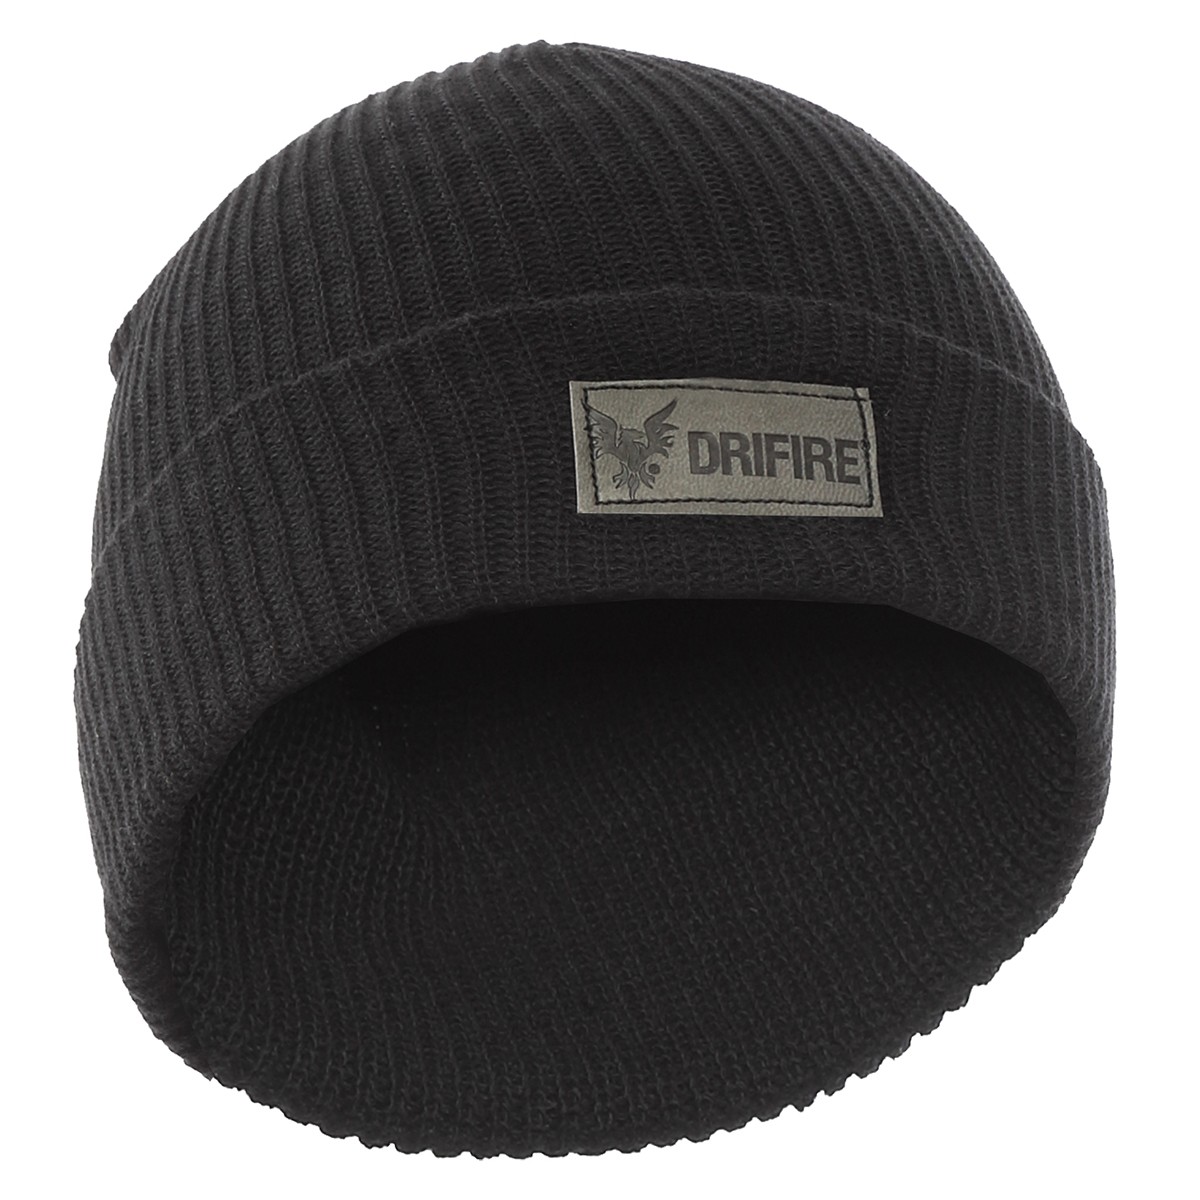 DRIFIRE FR Modacrylic Knit Winter Hat in Black